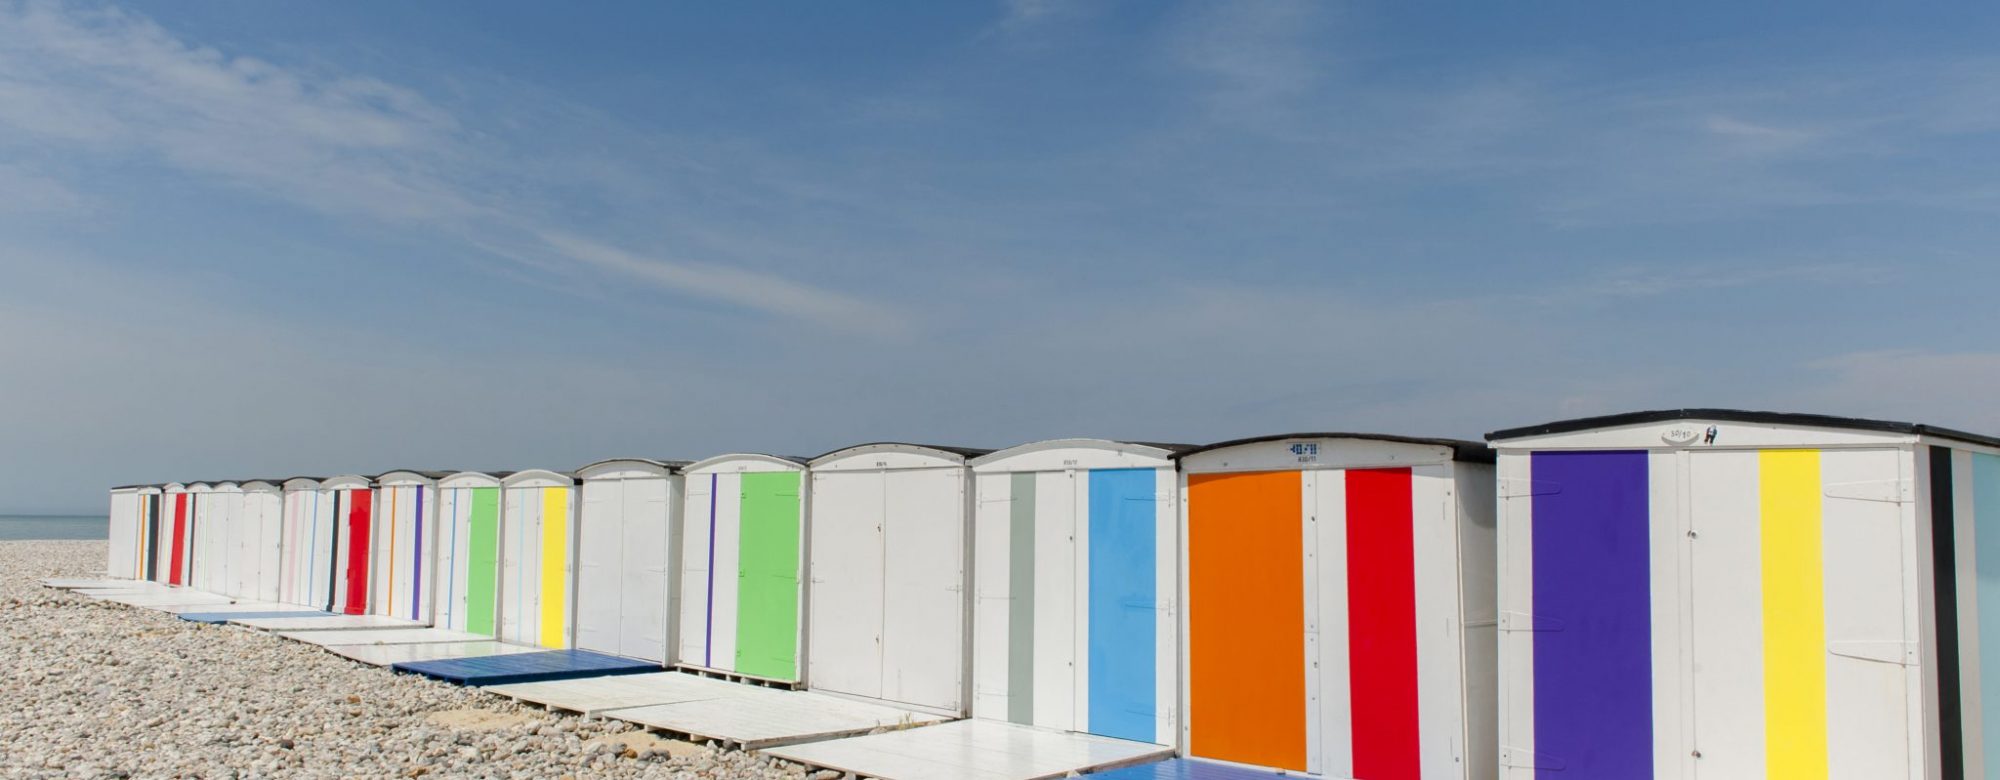 Colors on the beach par Karel Martens pour Un été au Havre